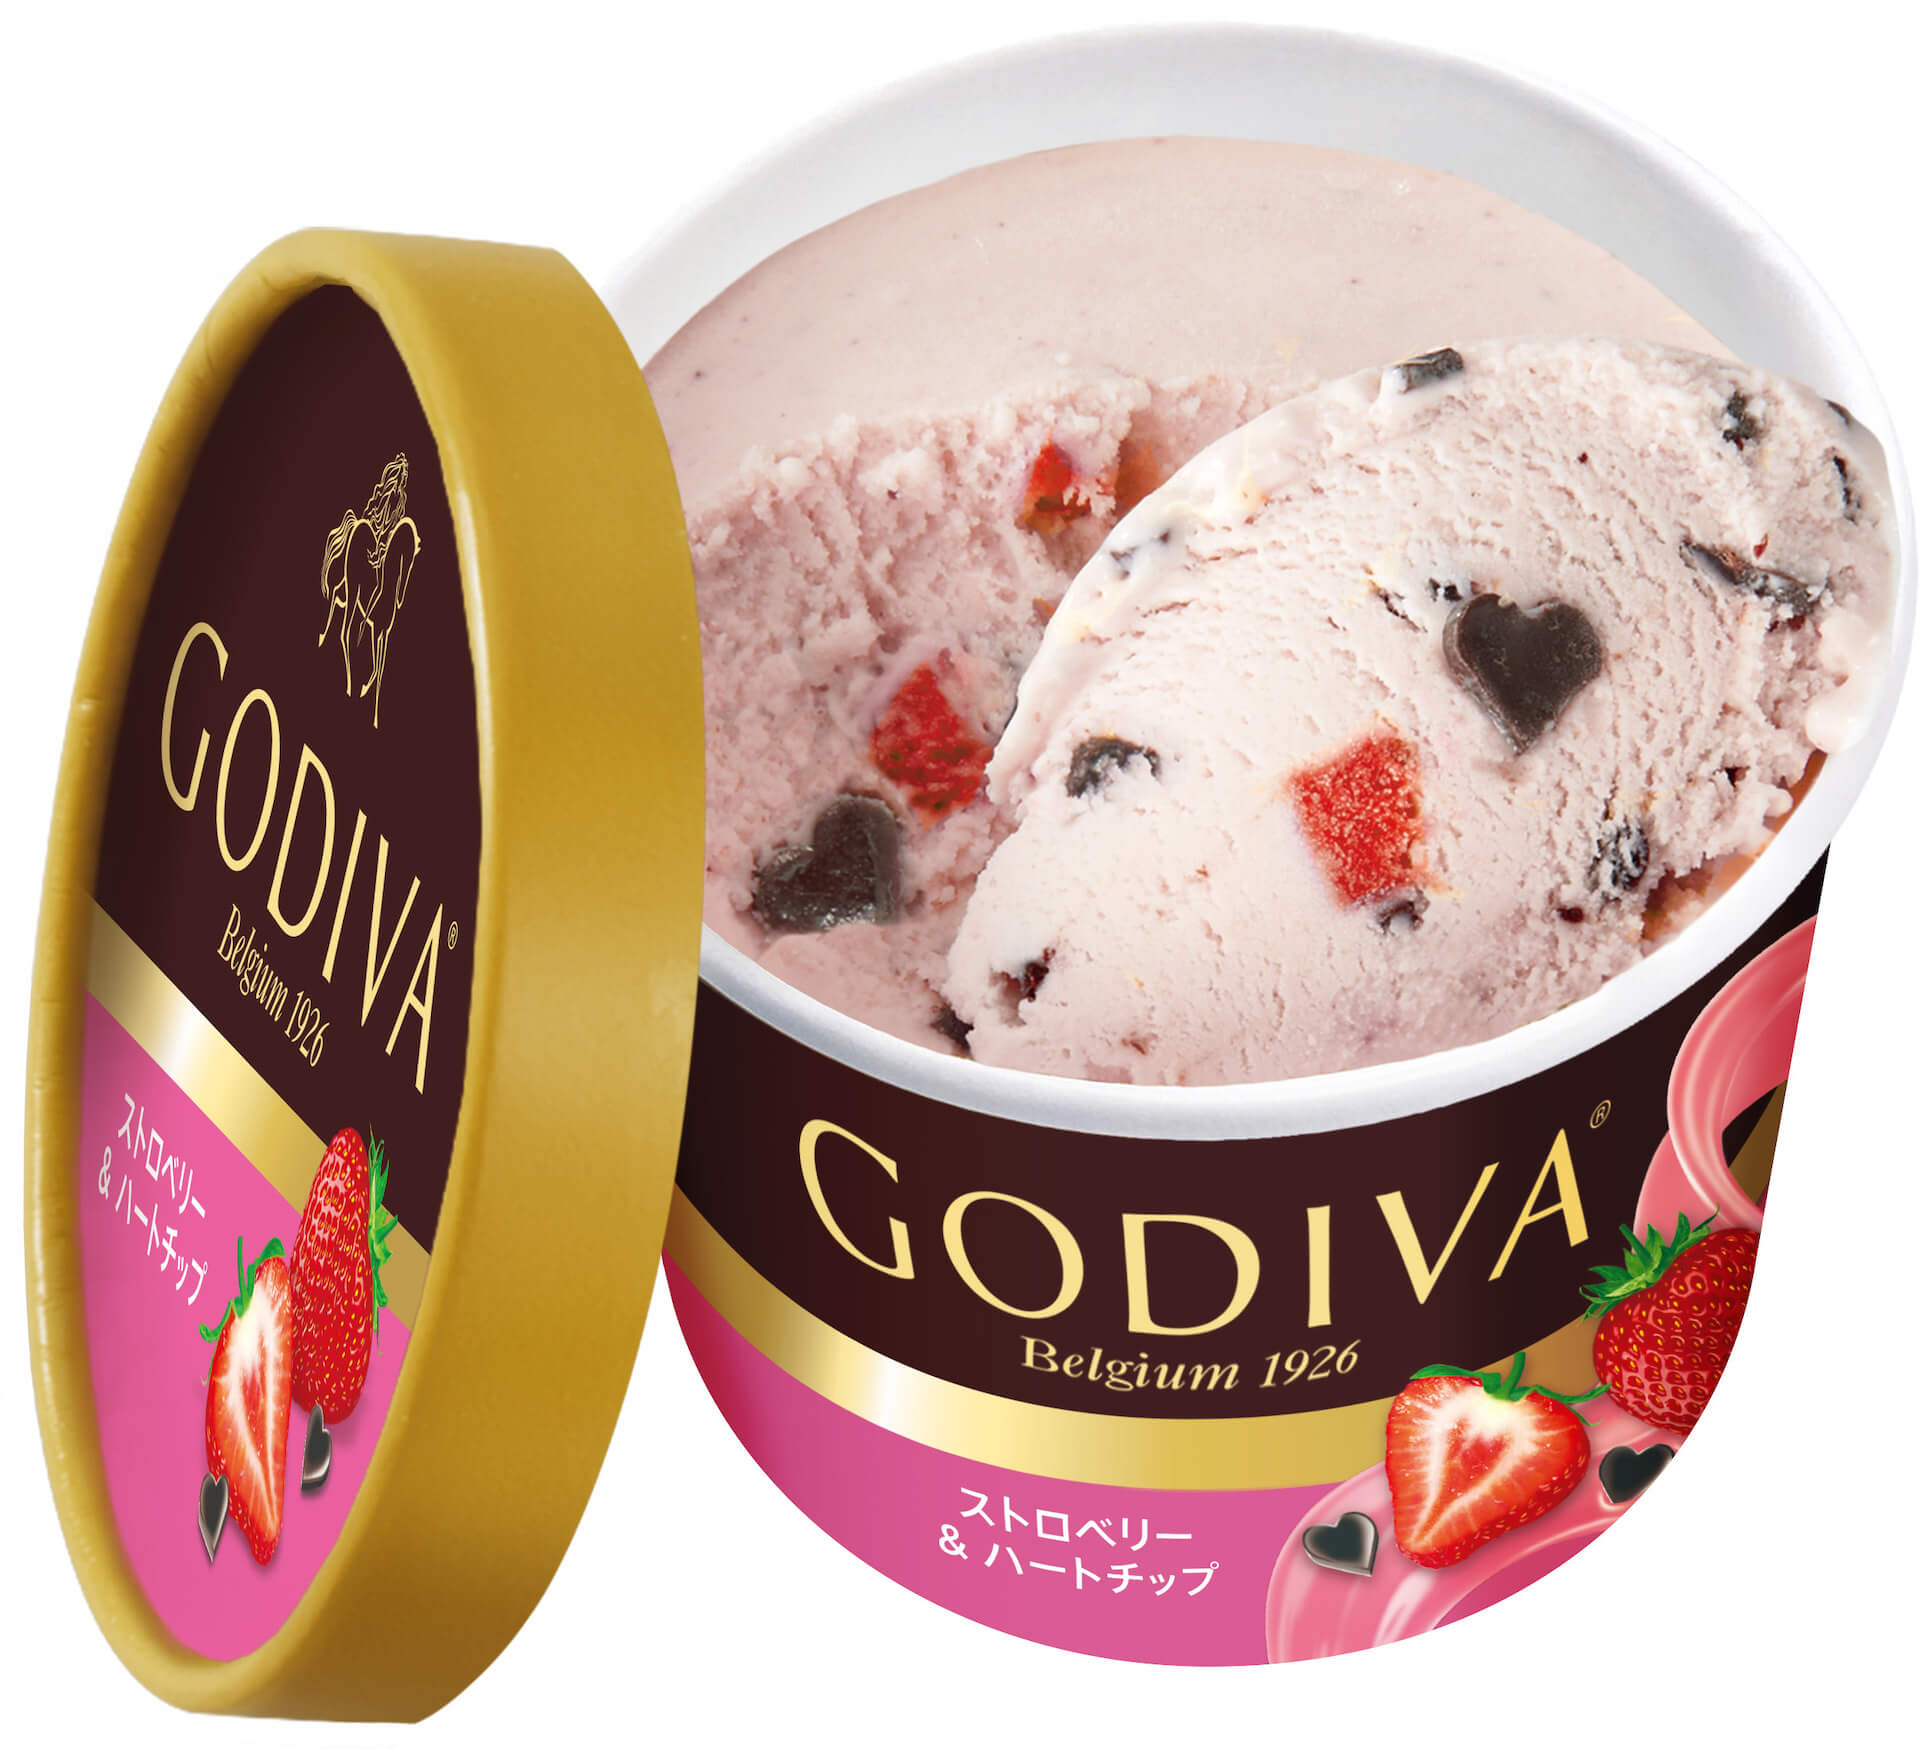 おうちで気軽にゴディバのチョコレートが楽しめる！ゴディバ『カップアイス』から新たなフレーバー5種類が登場 gourmet20201019_godiva_5